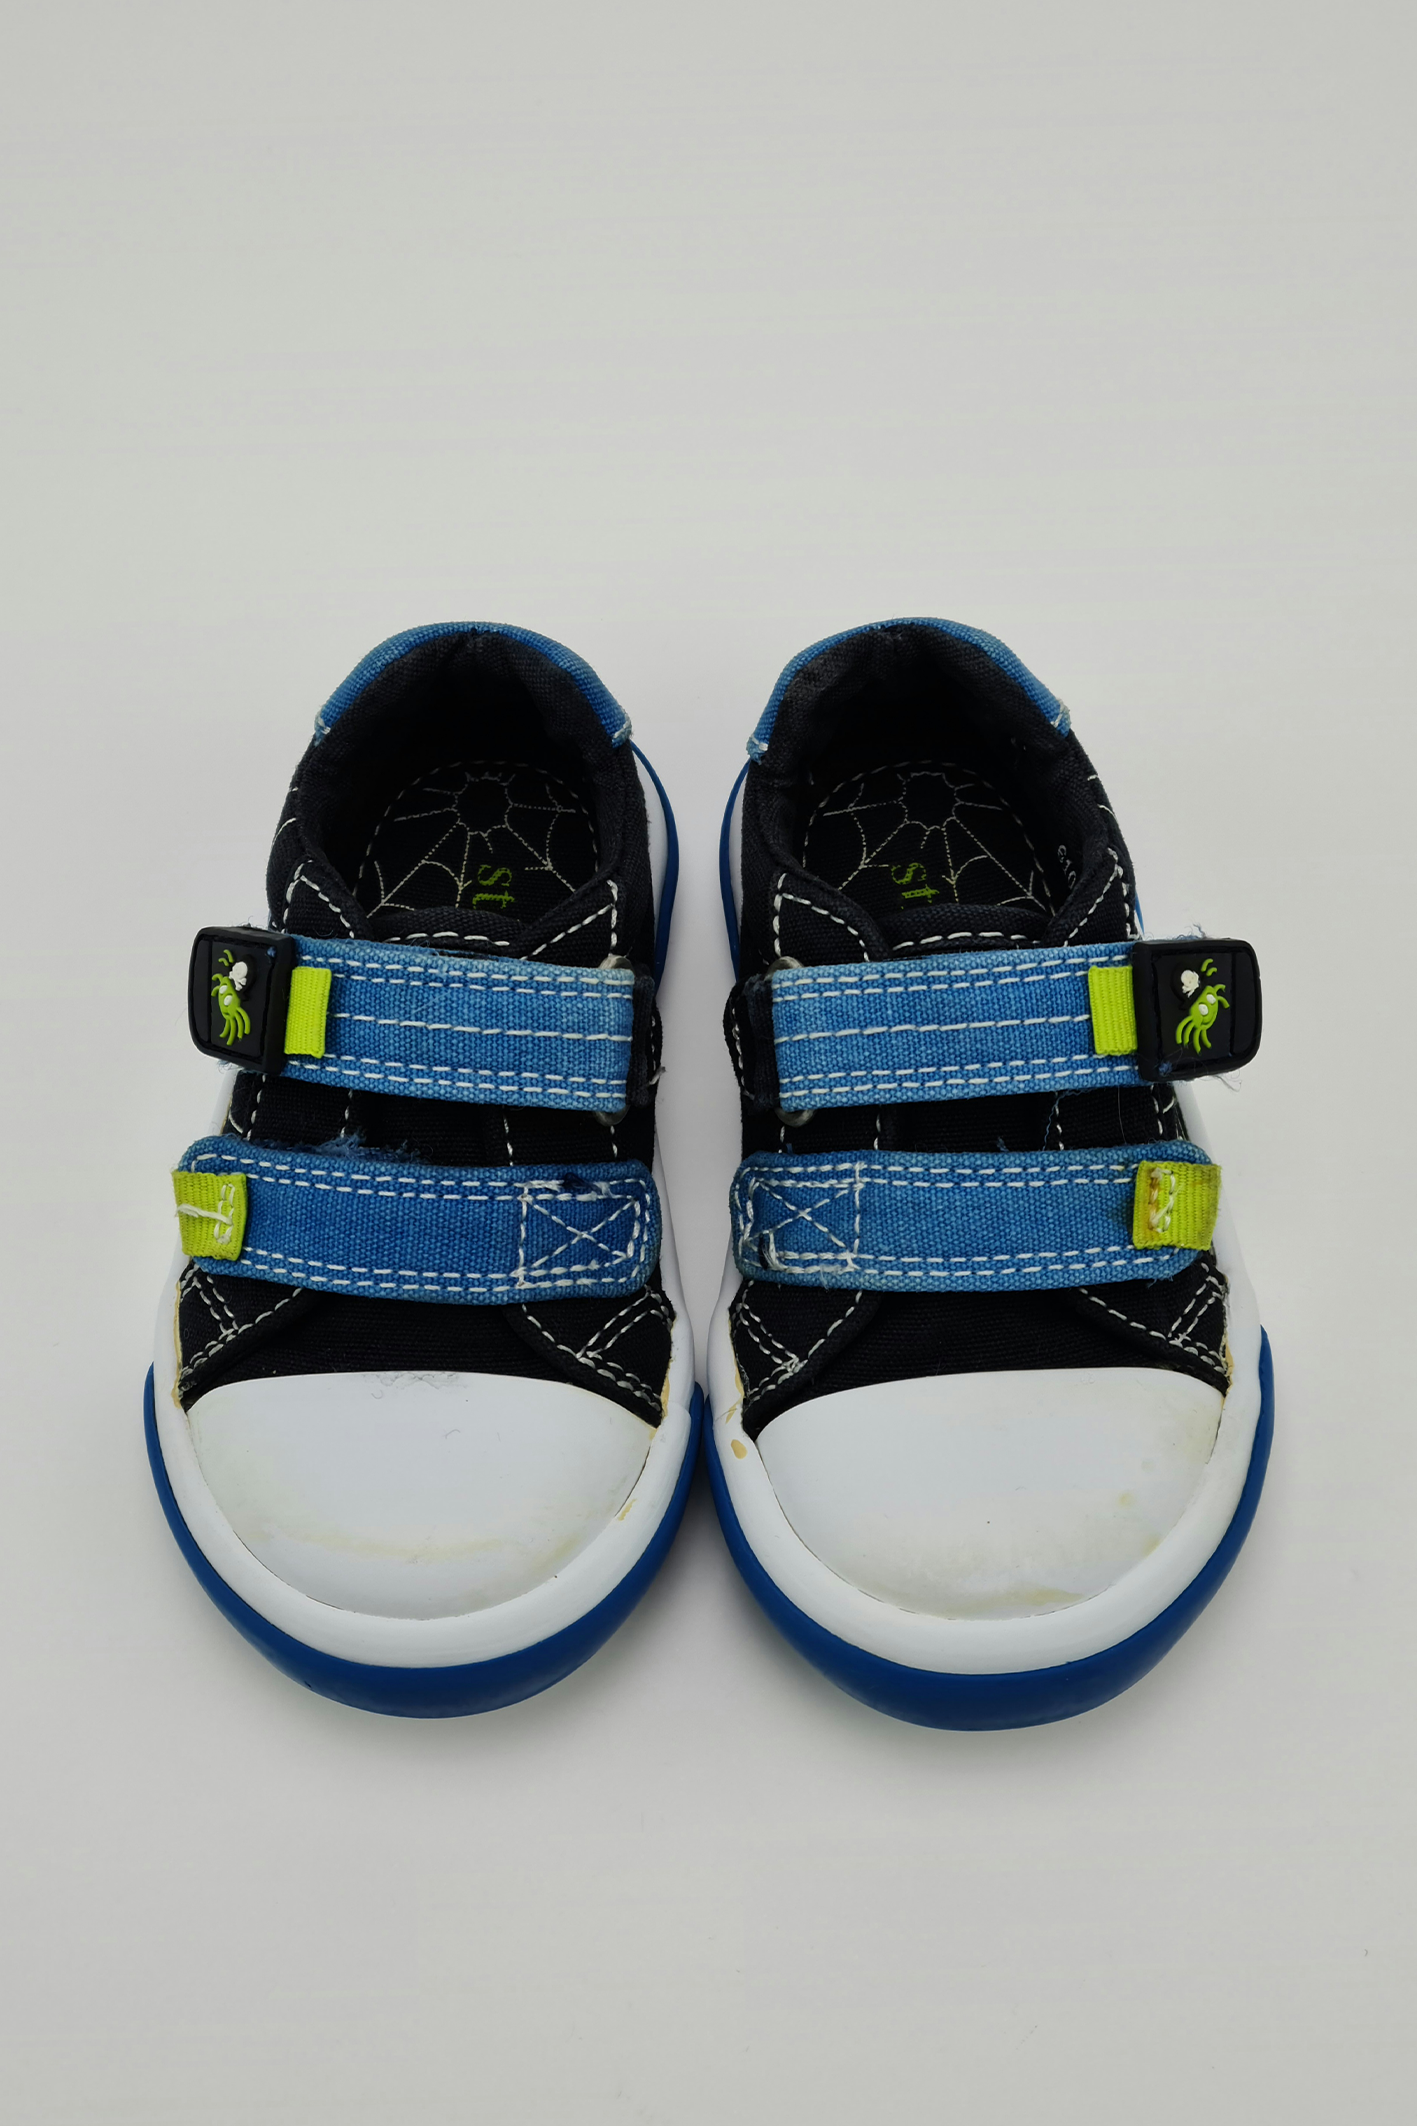 Taille 4 - Chaussures en toile Spider bleu marine